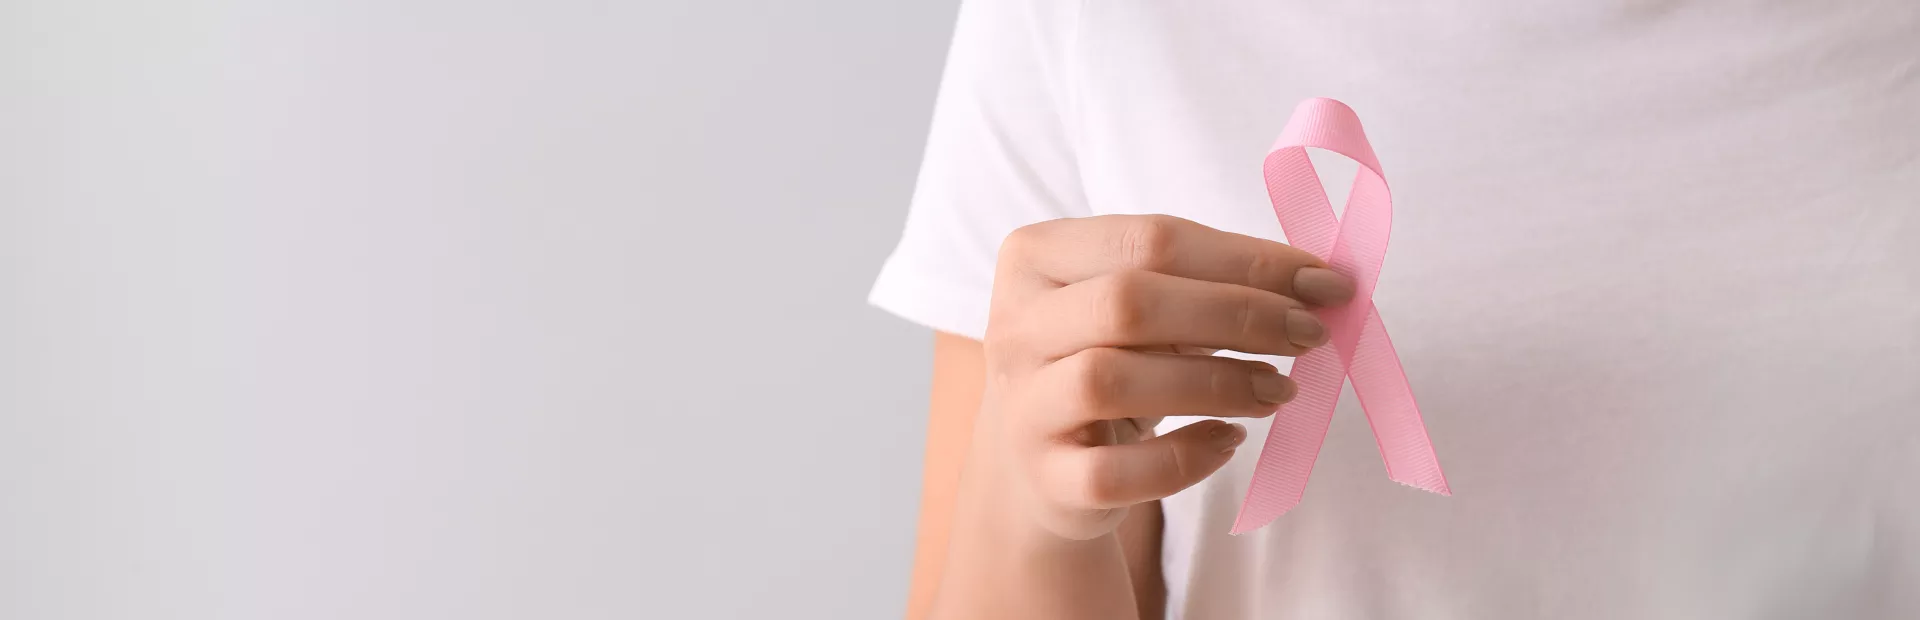 mujer sujetando alzo rosa entre los dedos